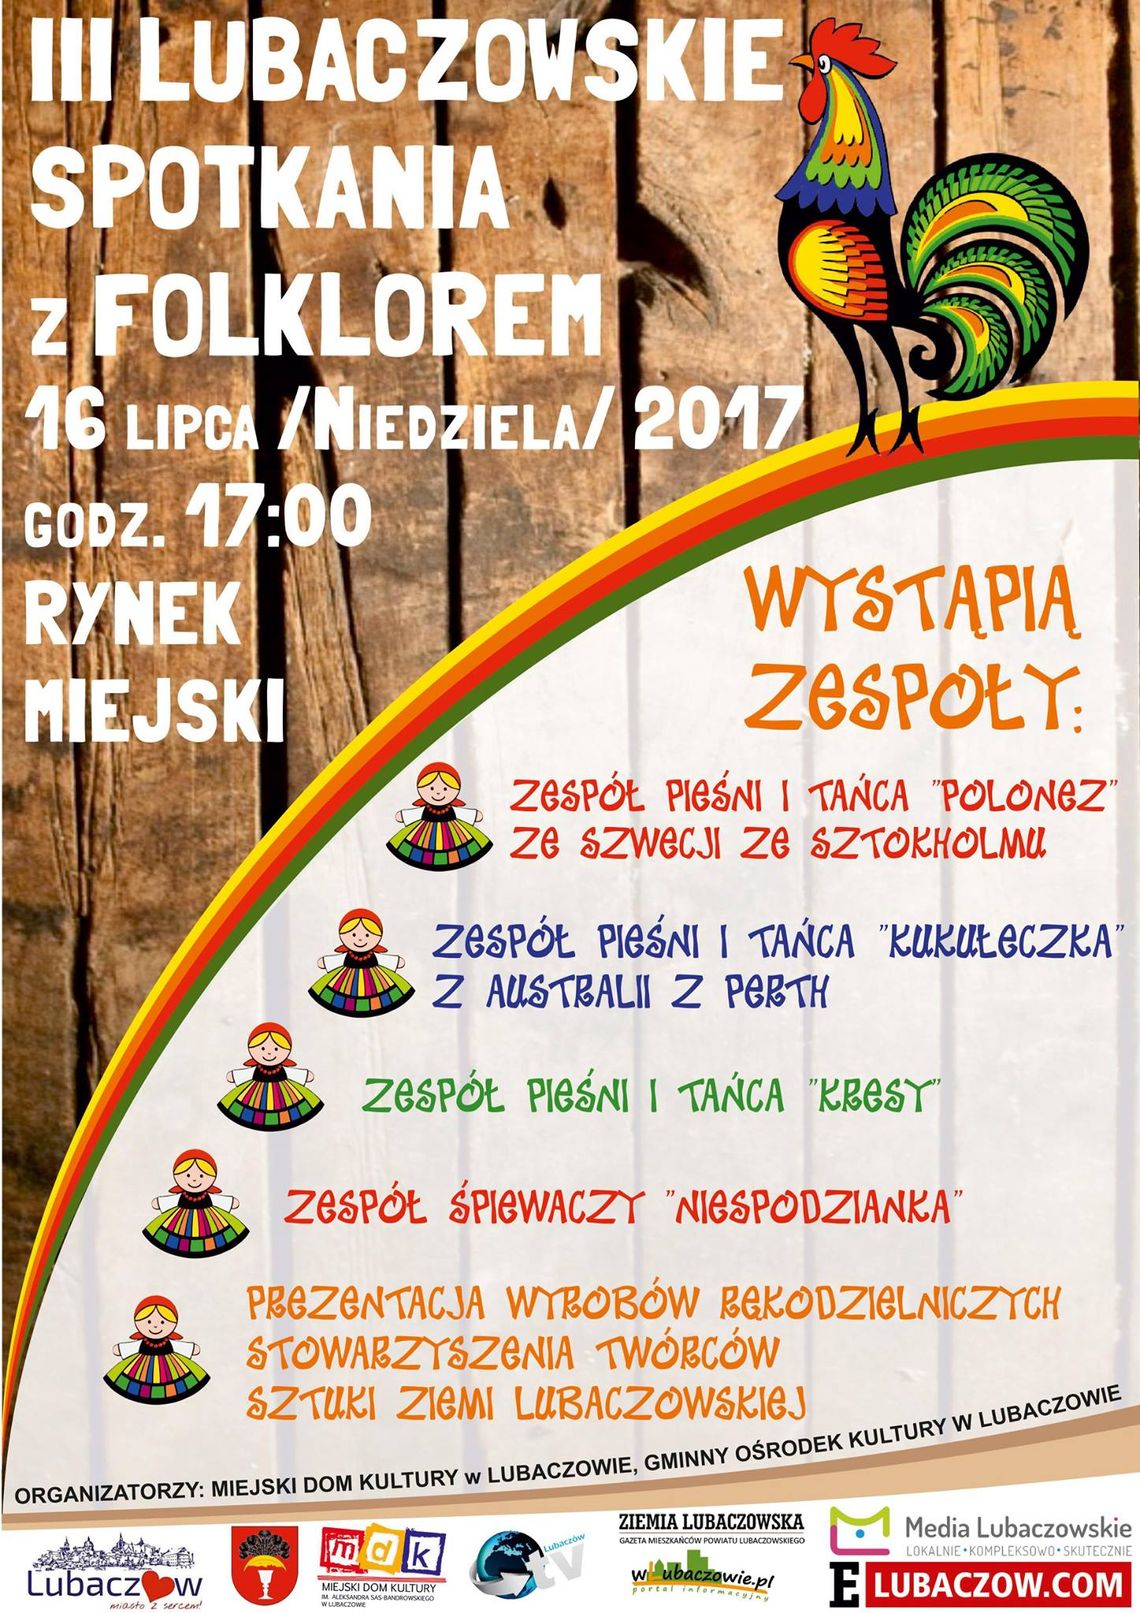 Lubaczowskie Spotkania z Folklorem